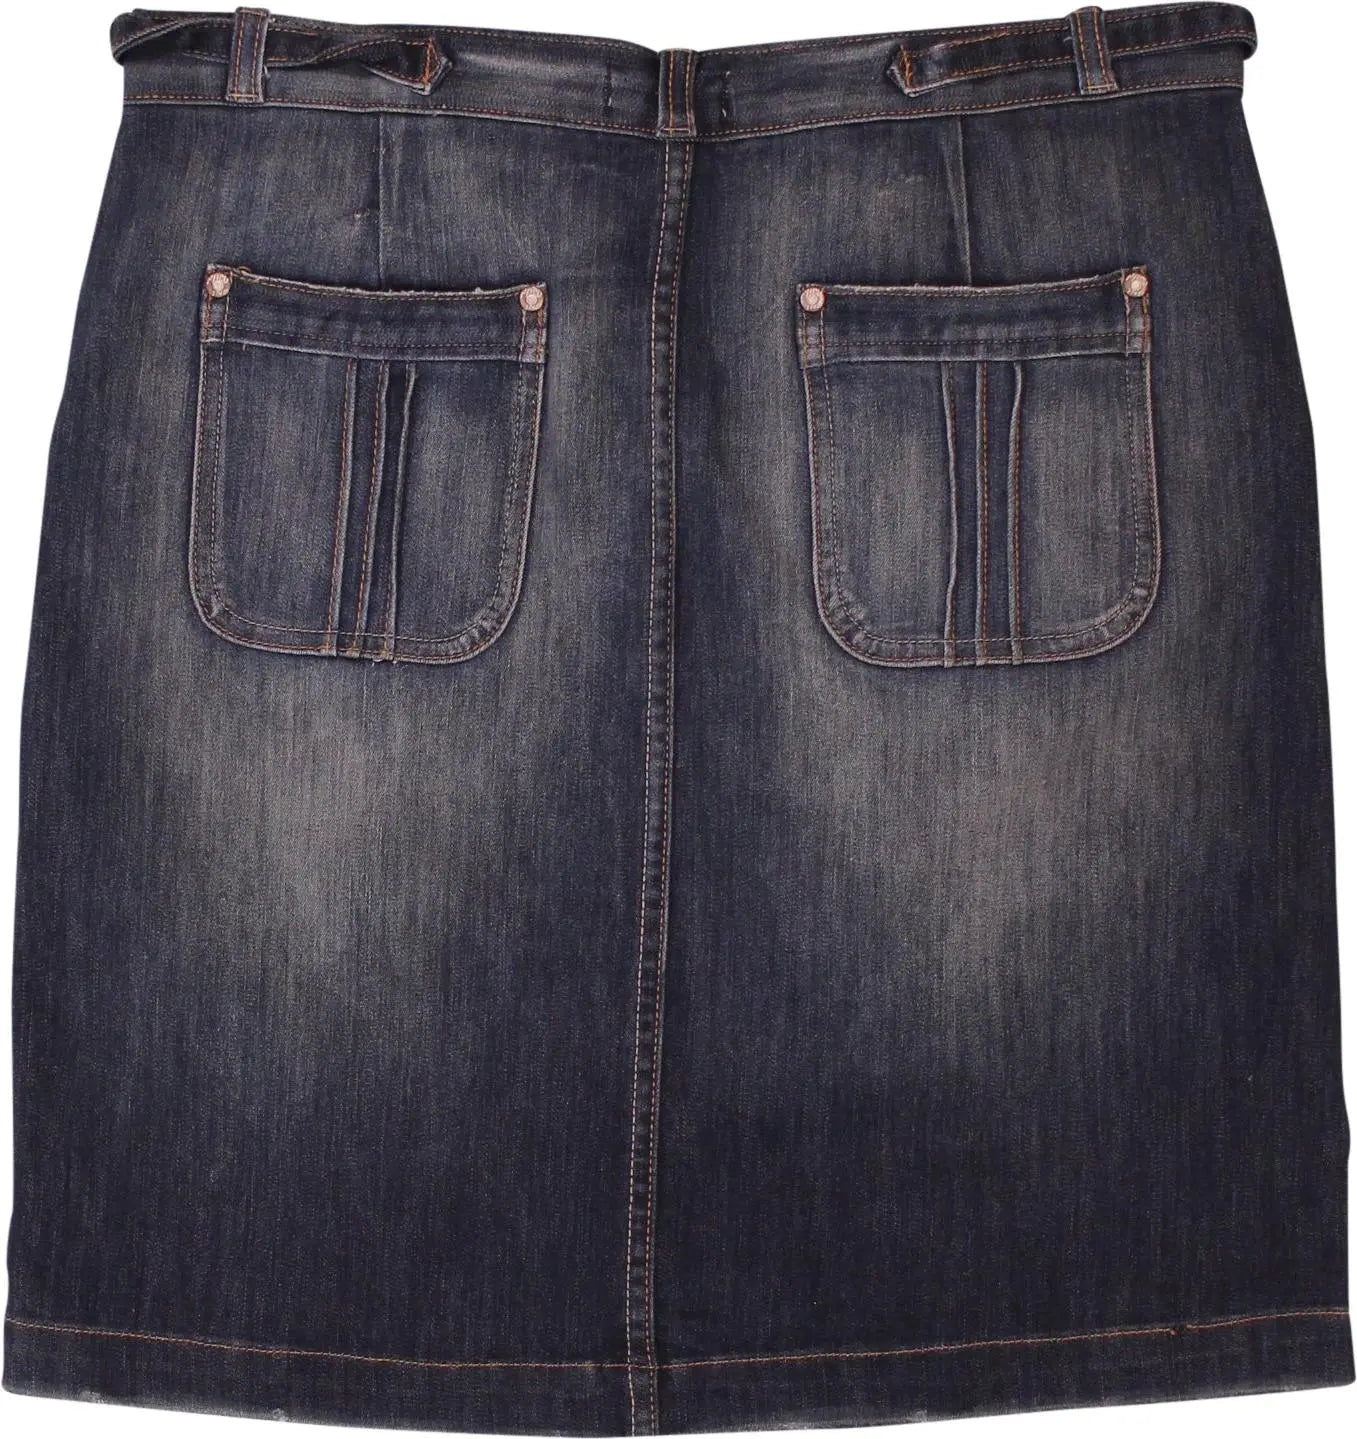 Fugu Jeans - Denim Skirt- ThriftTale.com - Vintage and second handclothing